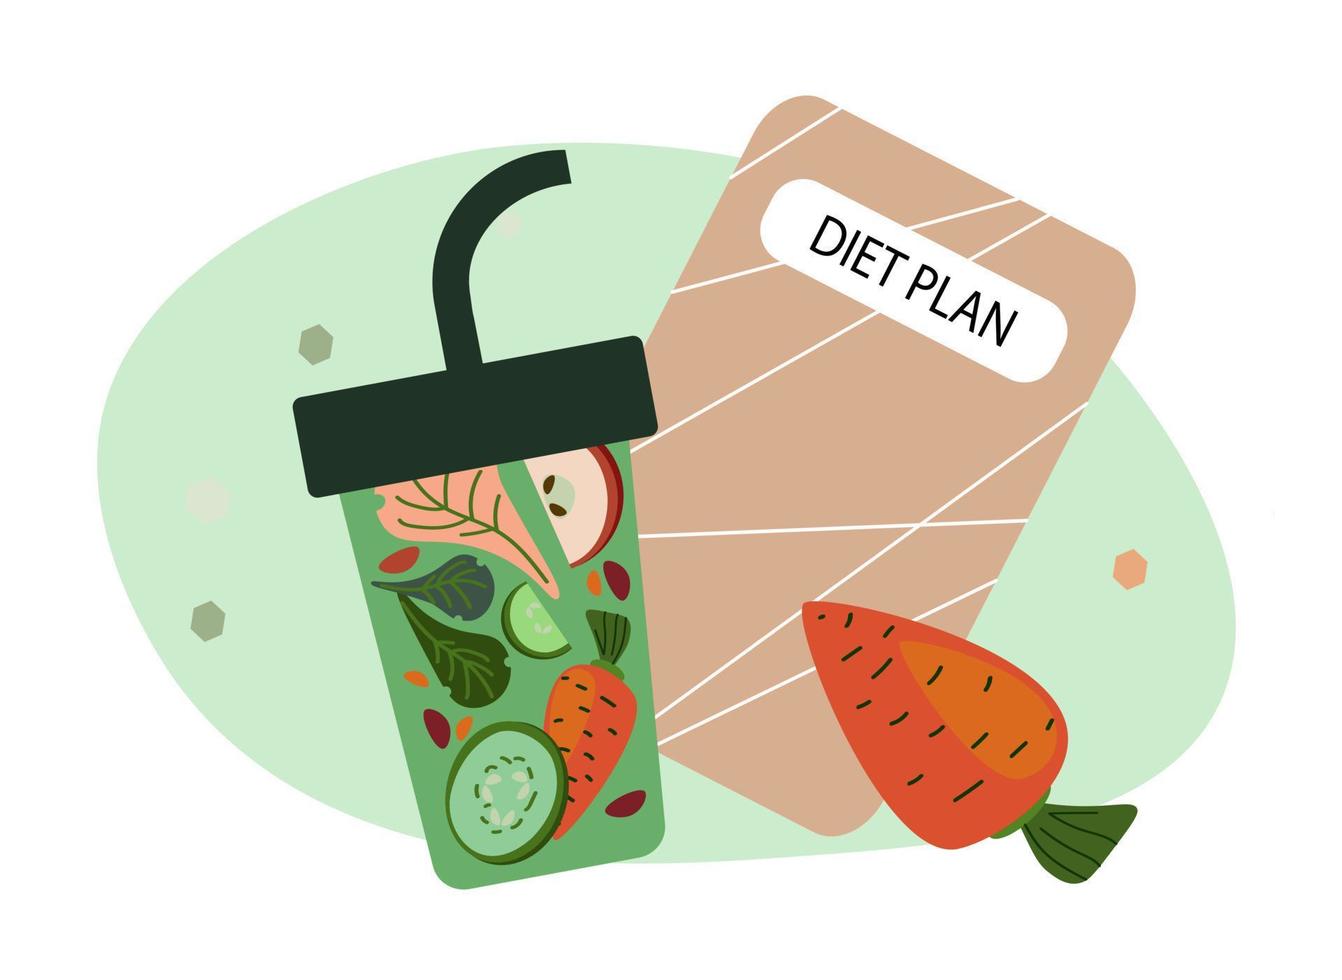 diet plan concept vector